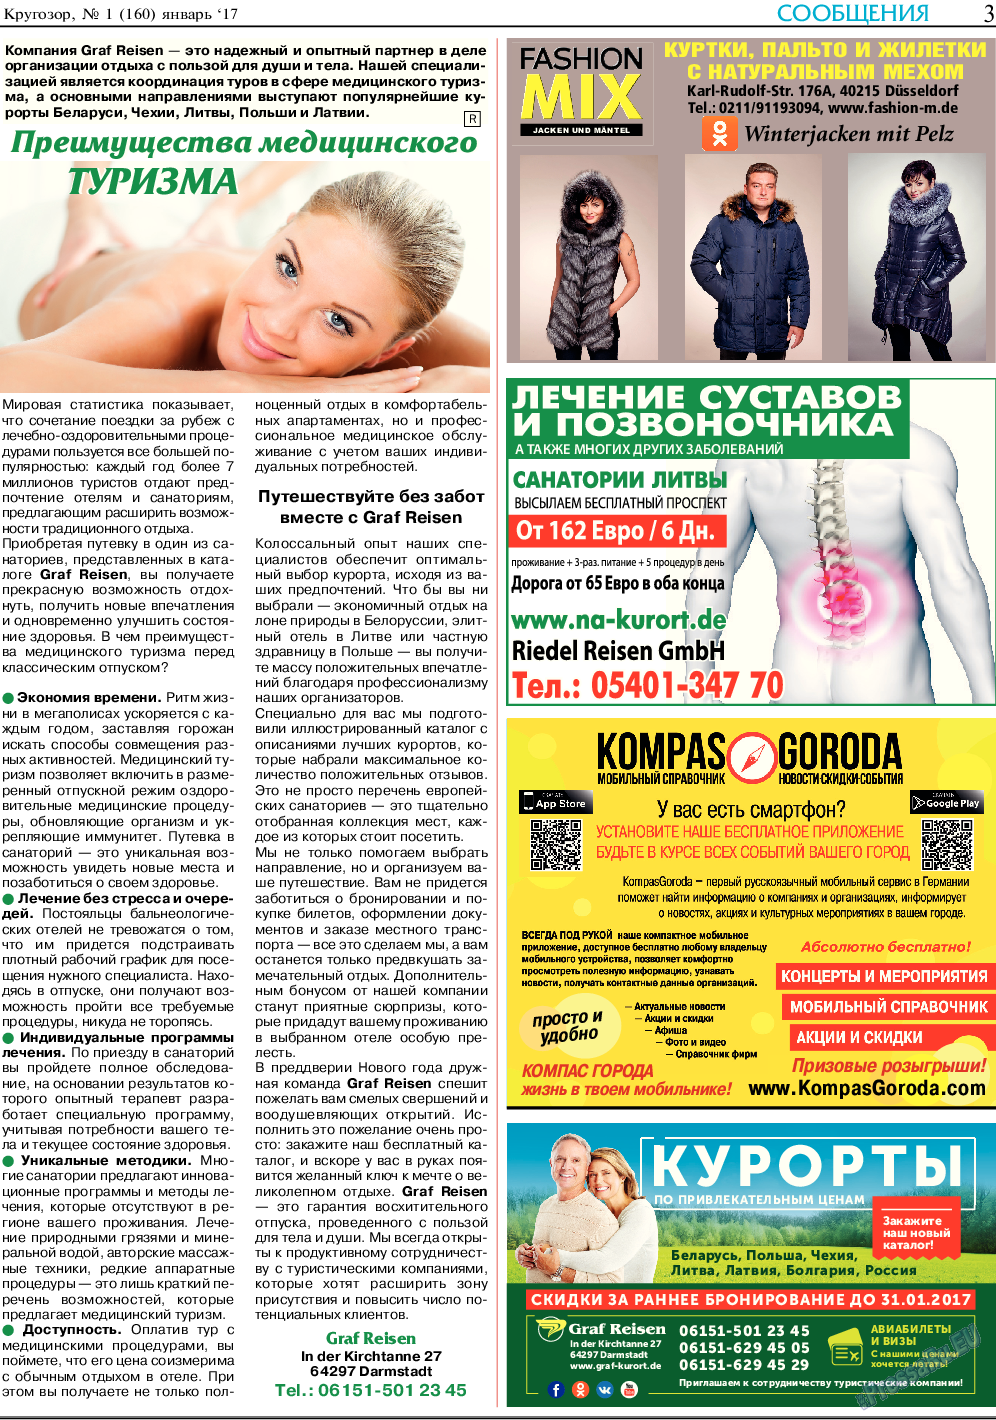 Кругозор, газета. 2017 №1 стр.3